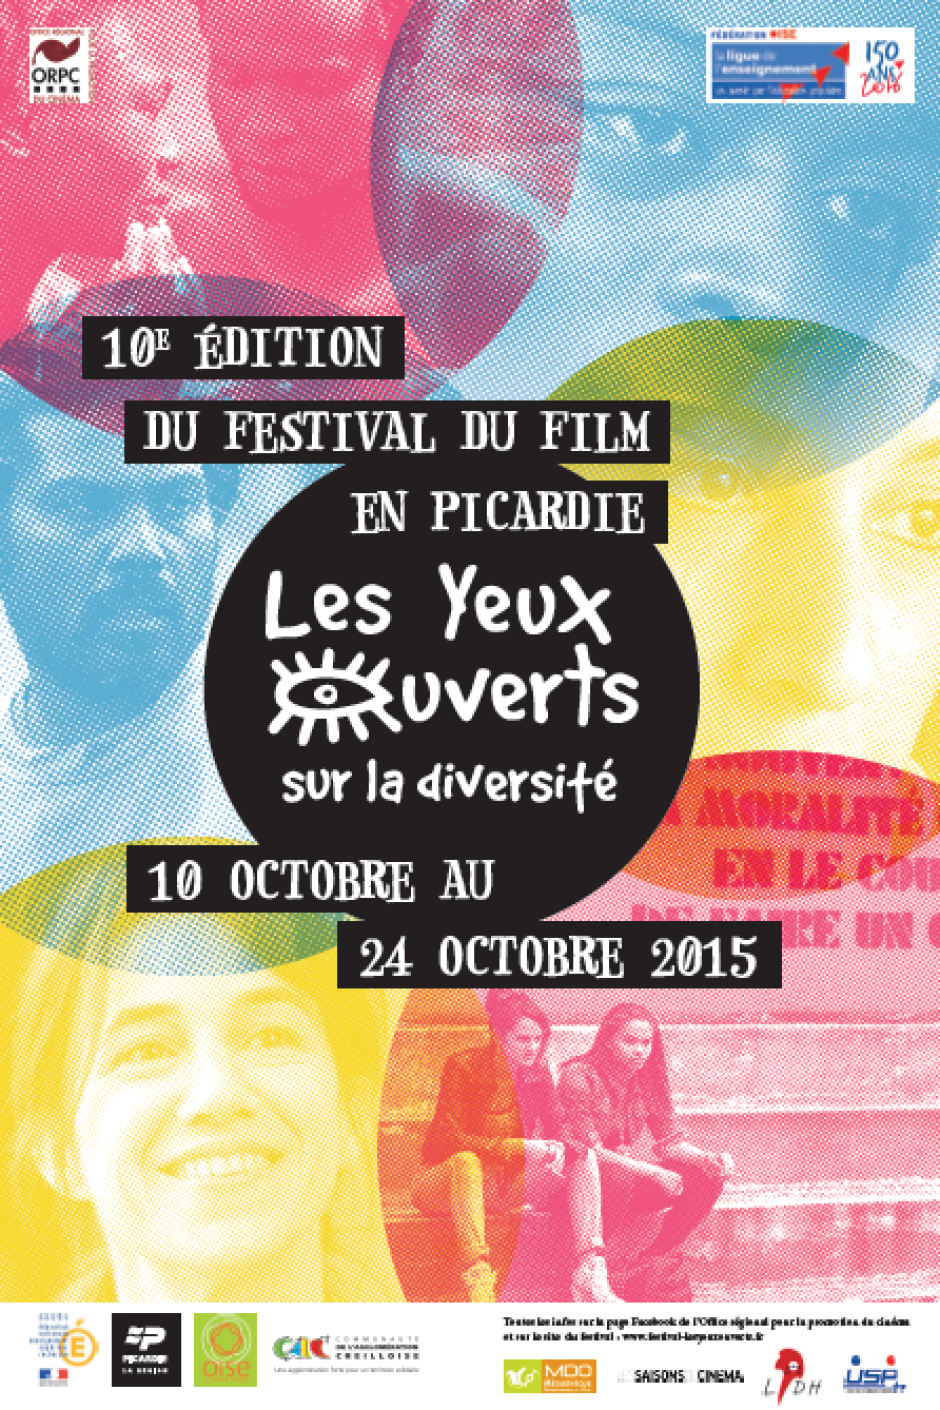 Du 10 au 24 octobre, Picardie - Festival « Les yeux ouverts sur la diversité »